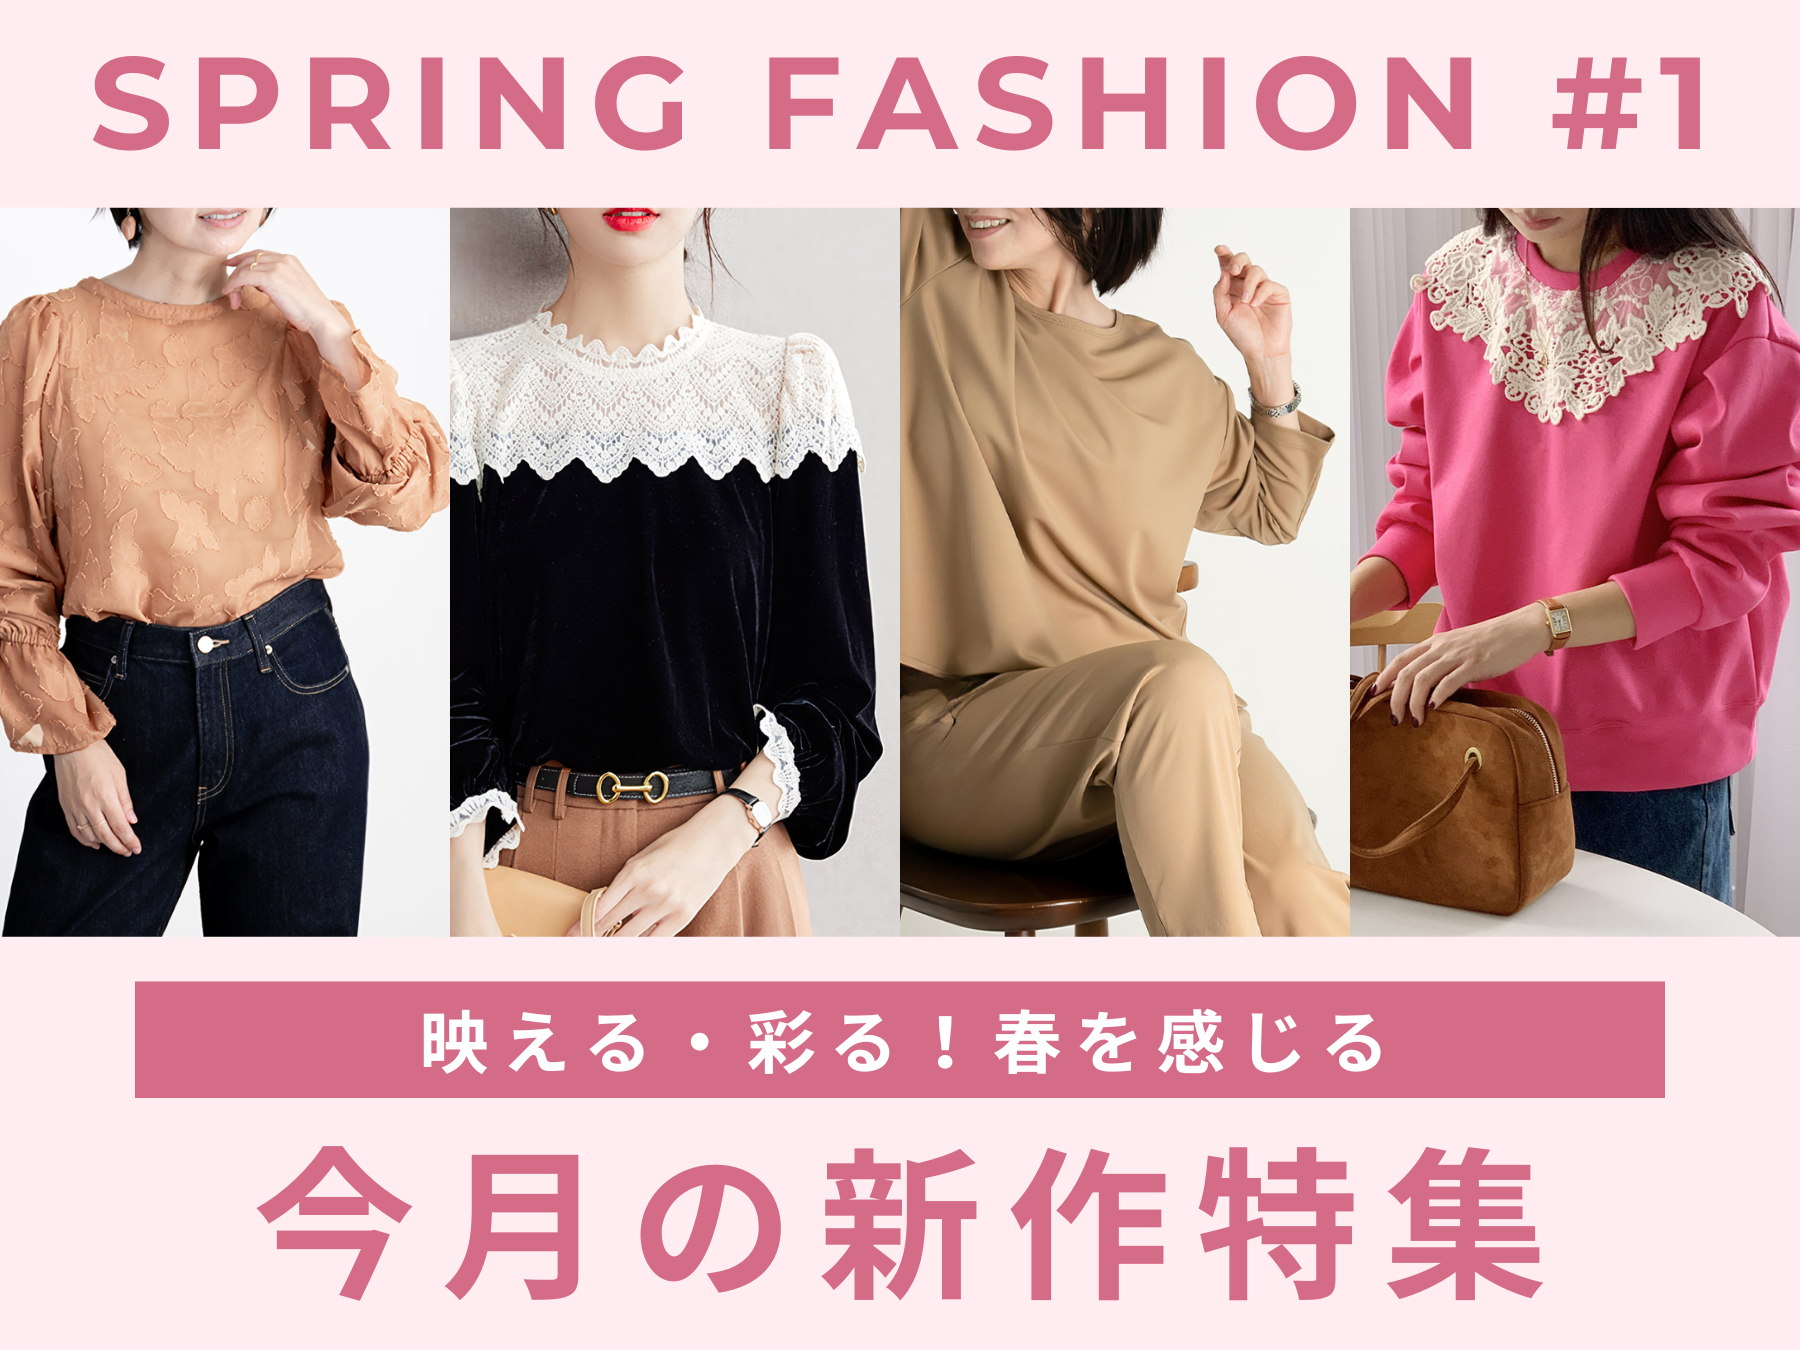 Spring Fashion #1 映える・彩る！春を感じる 今月の新作特集